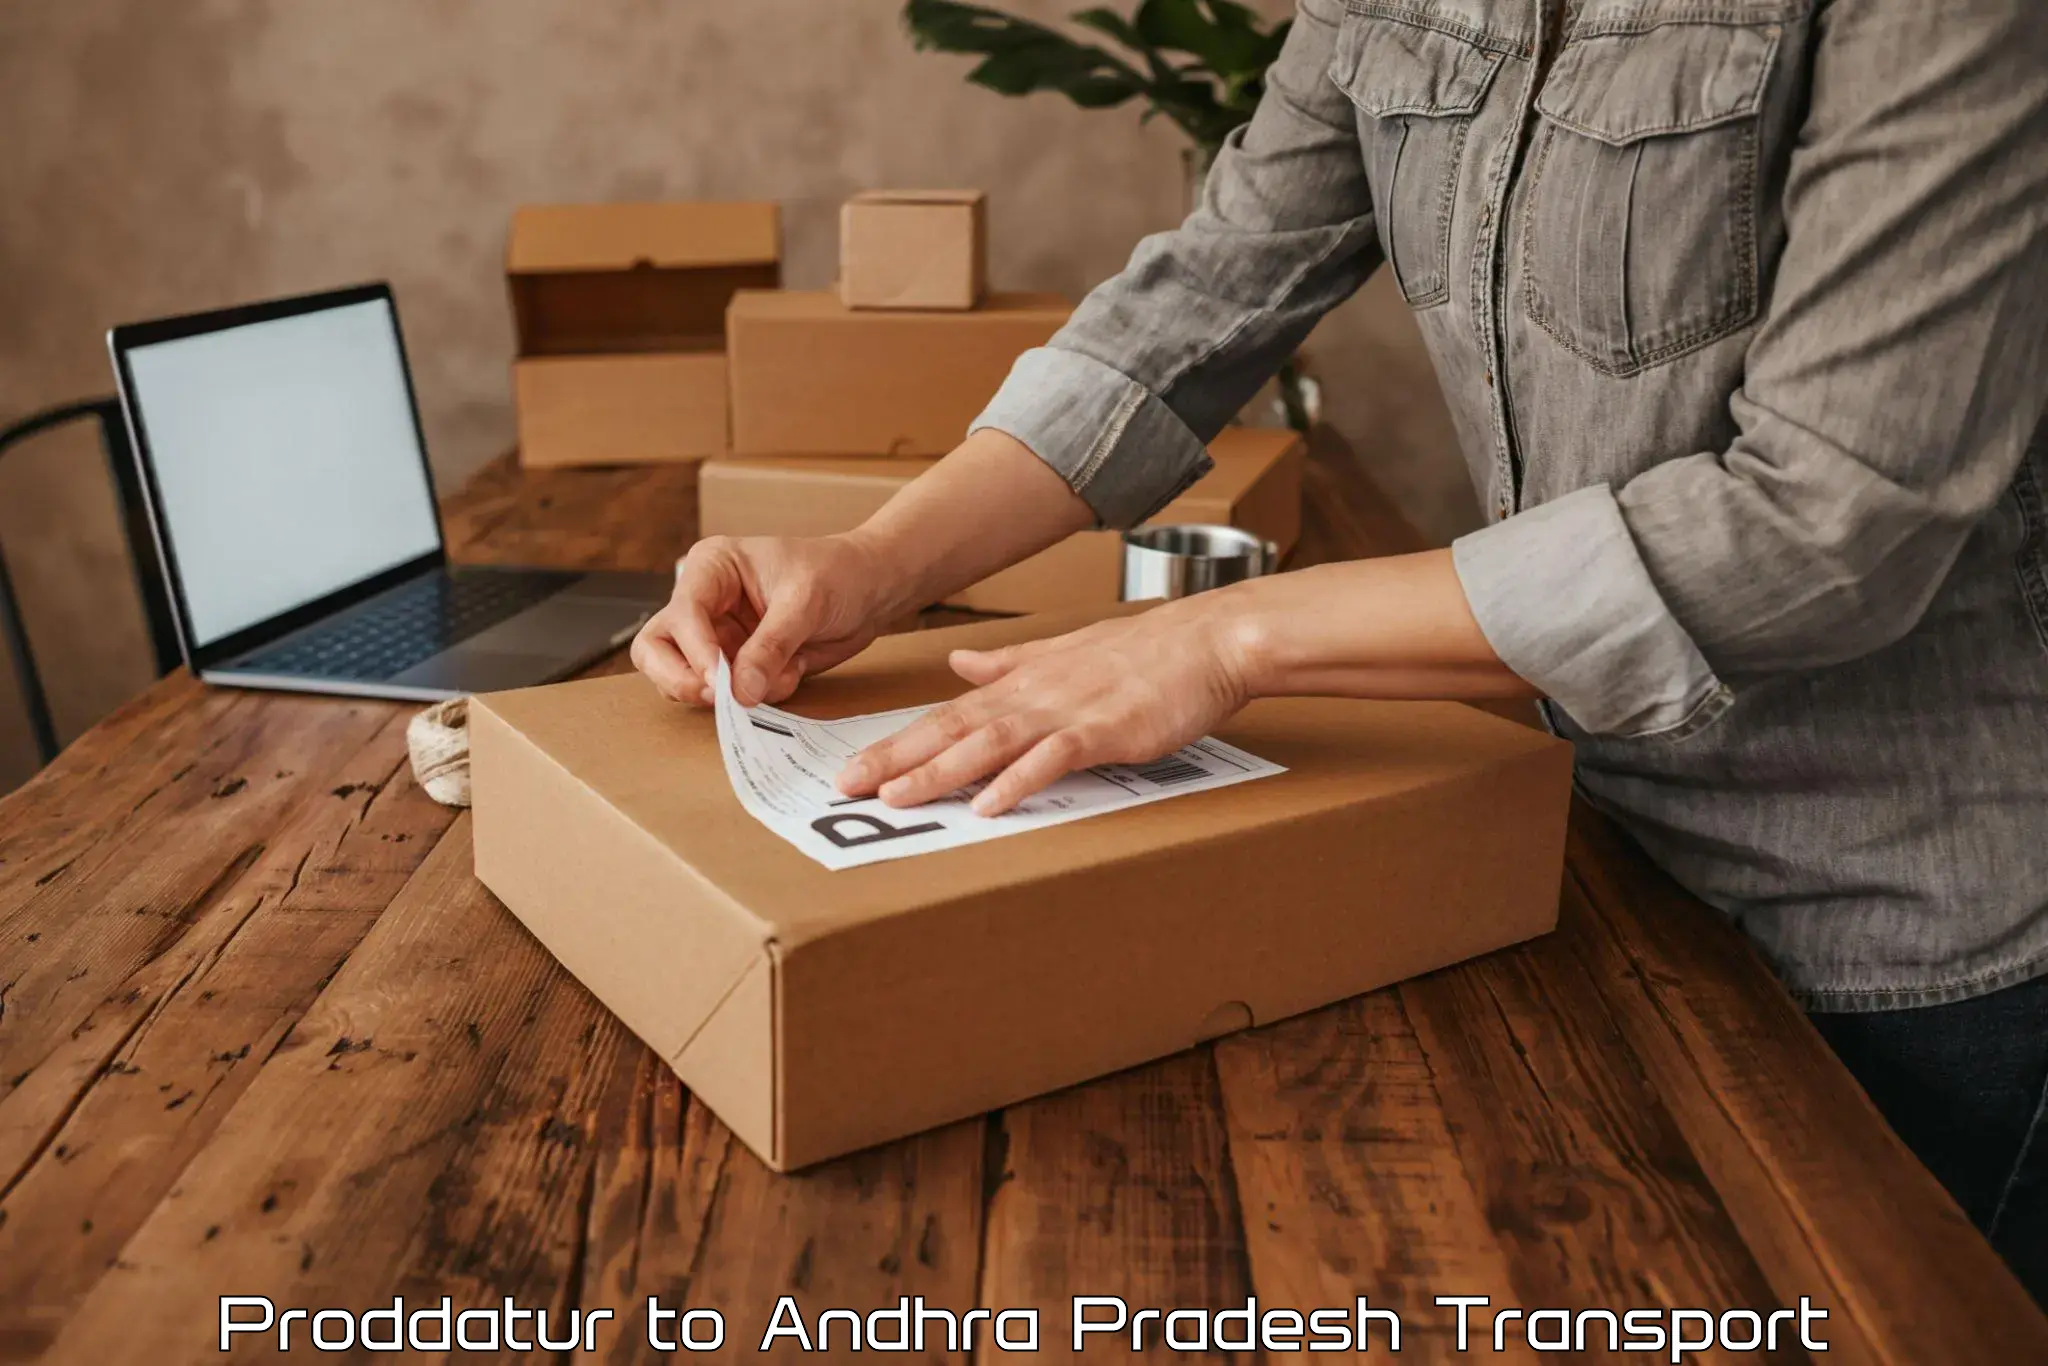 India truck logistics services Proddatur to Tirupati